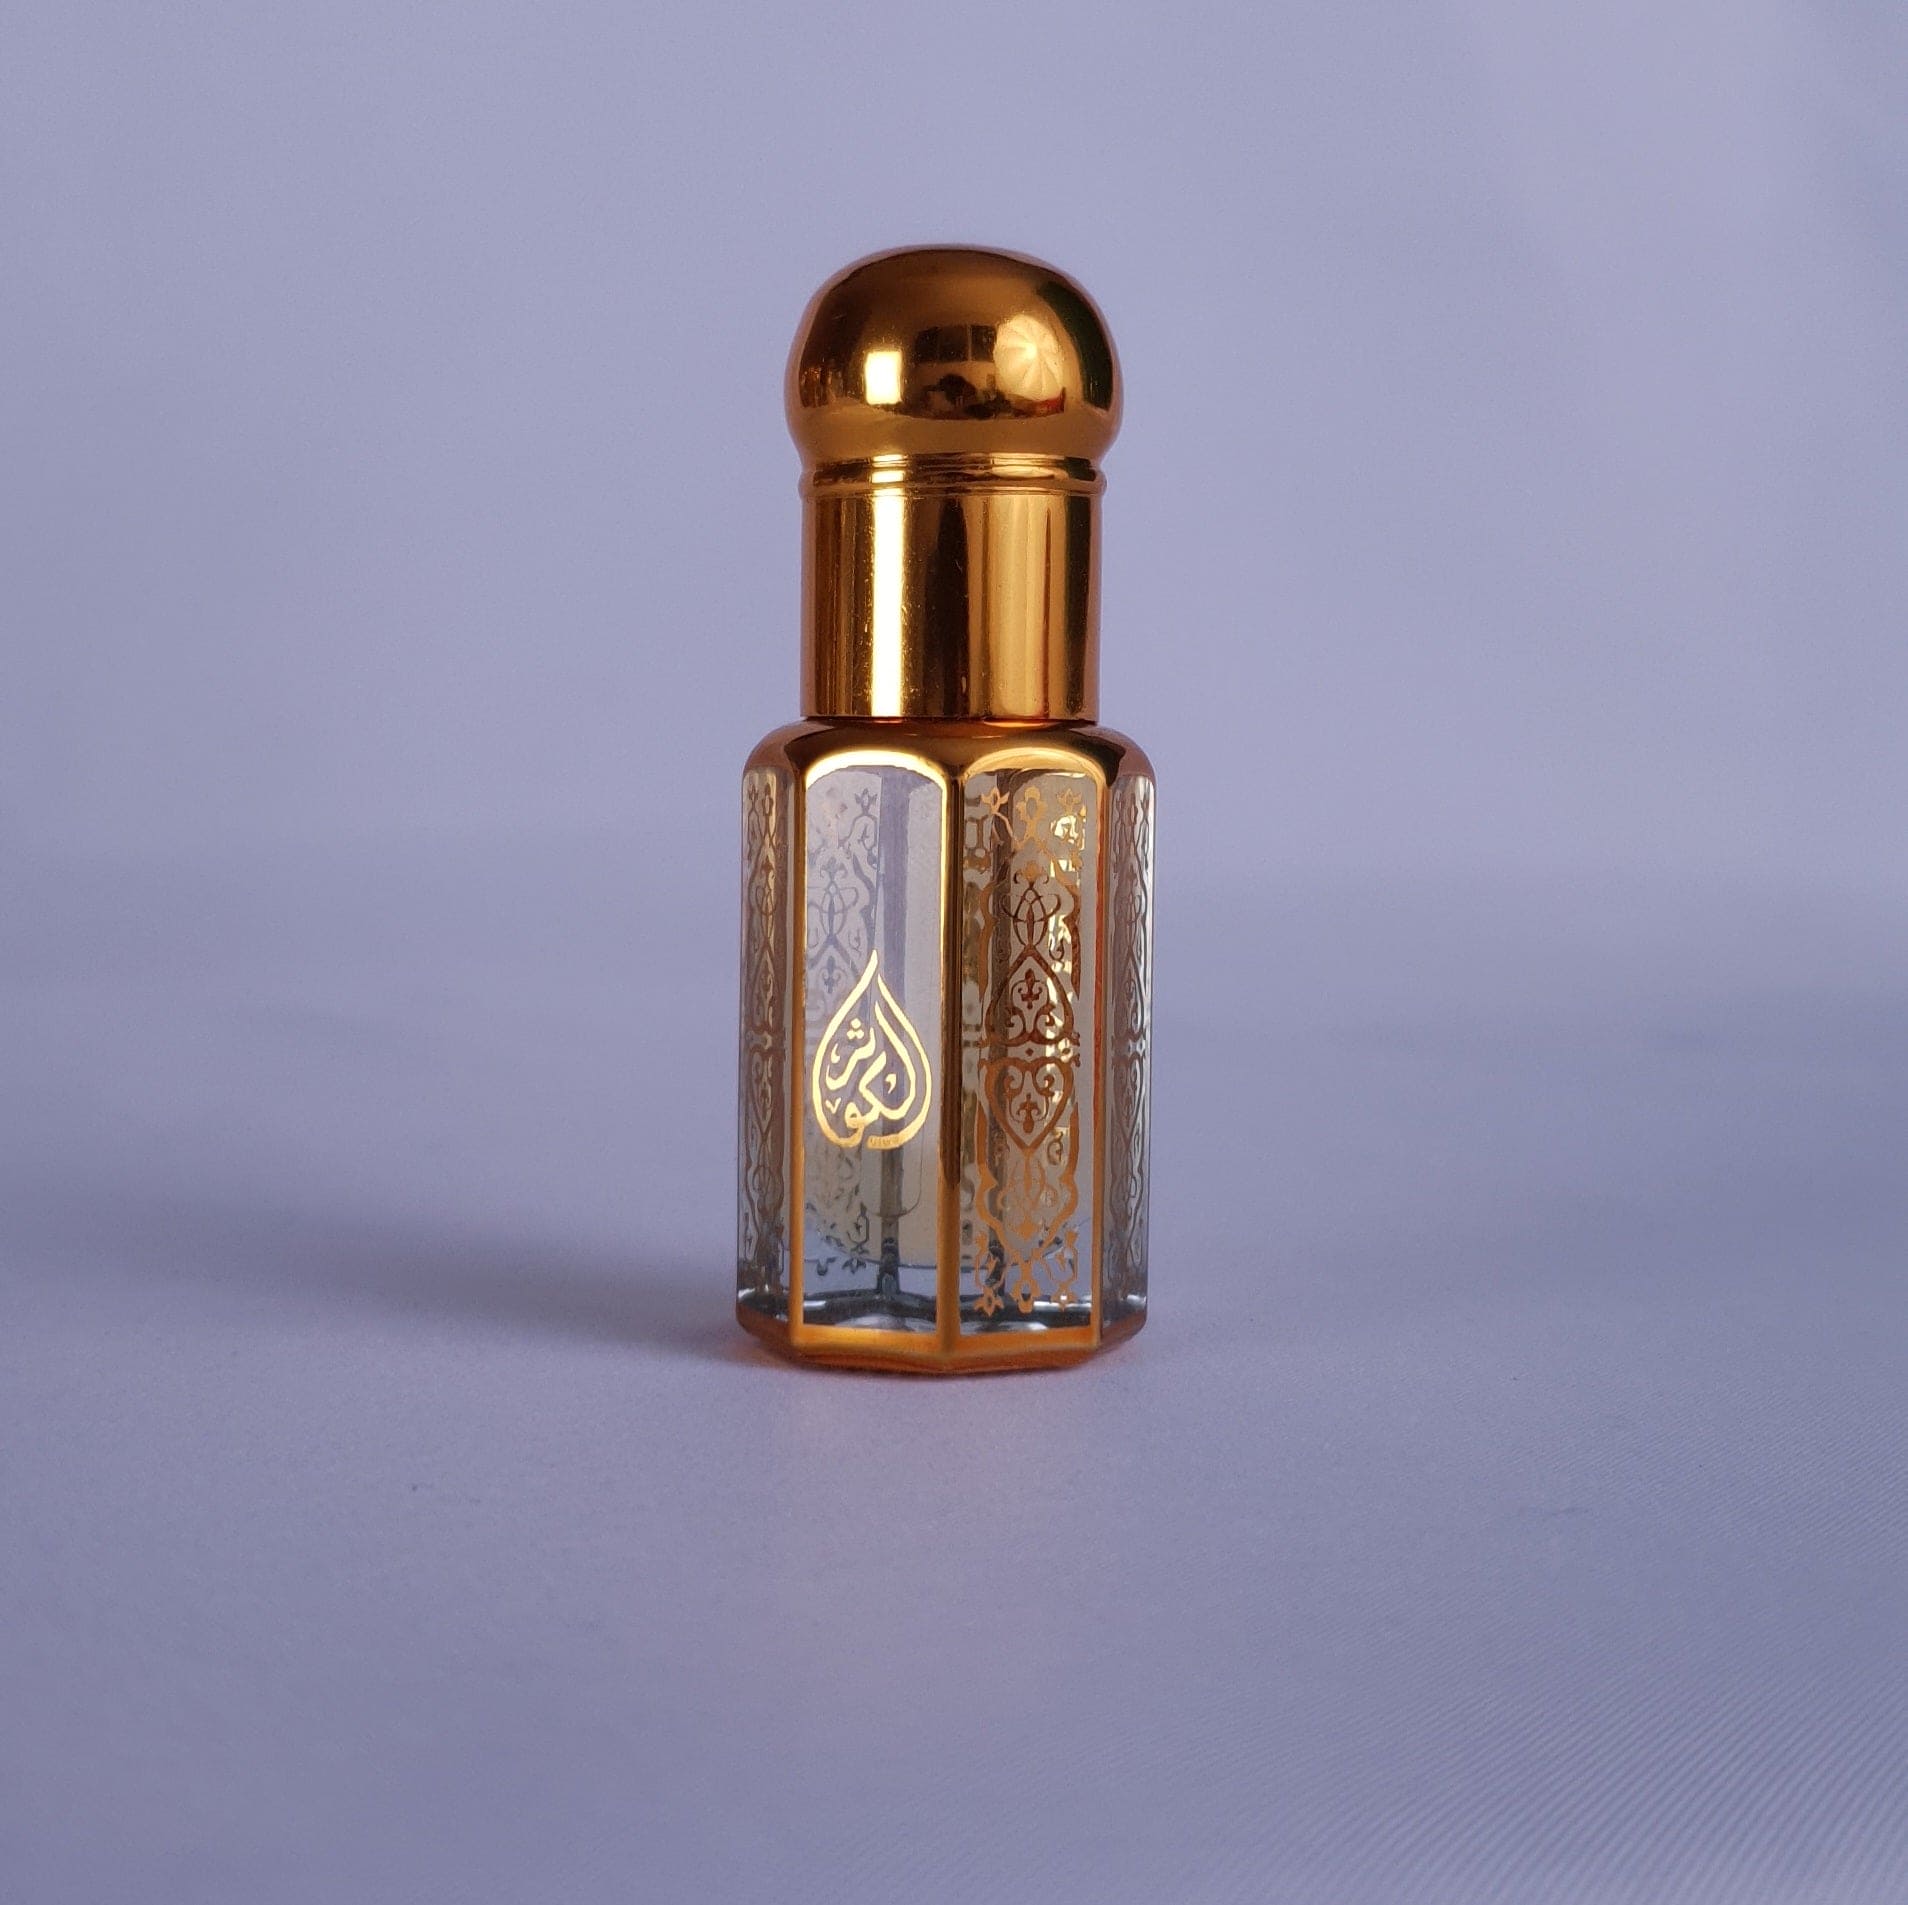 100% Pure Royal Arabian Oud, Premium Perfume Oil